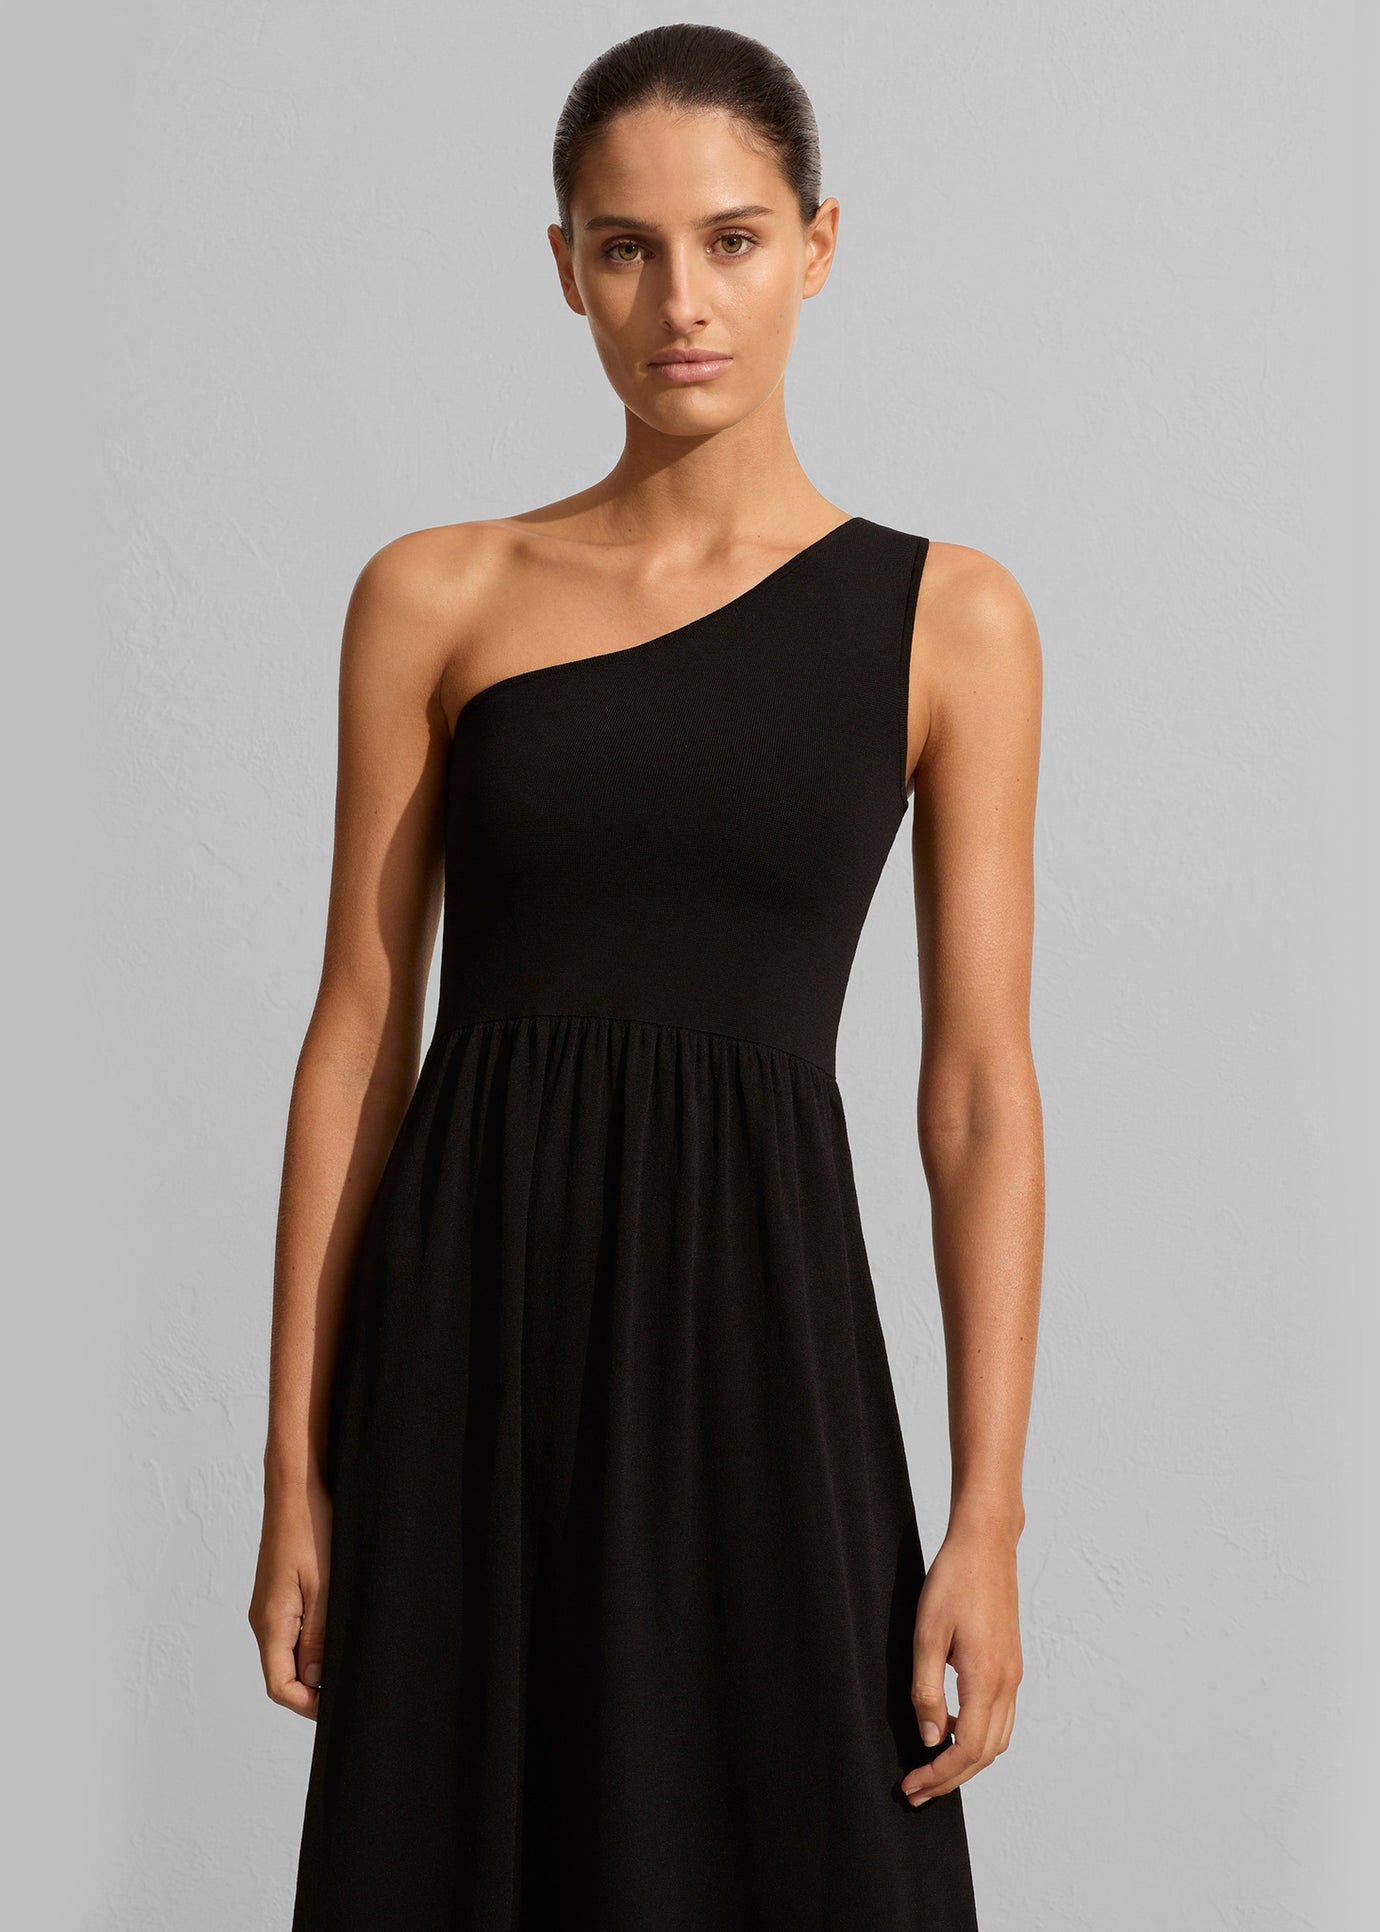 Matteau Asymmetric Knit Dress - Black - 1